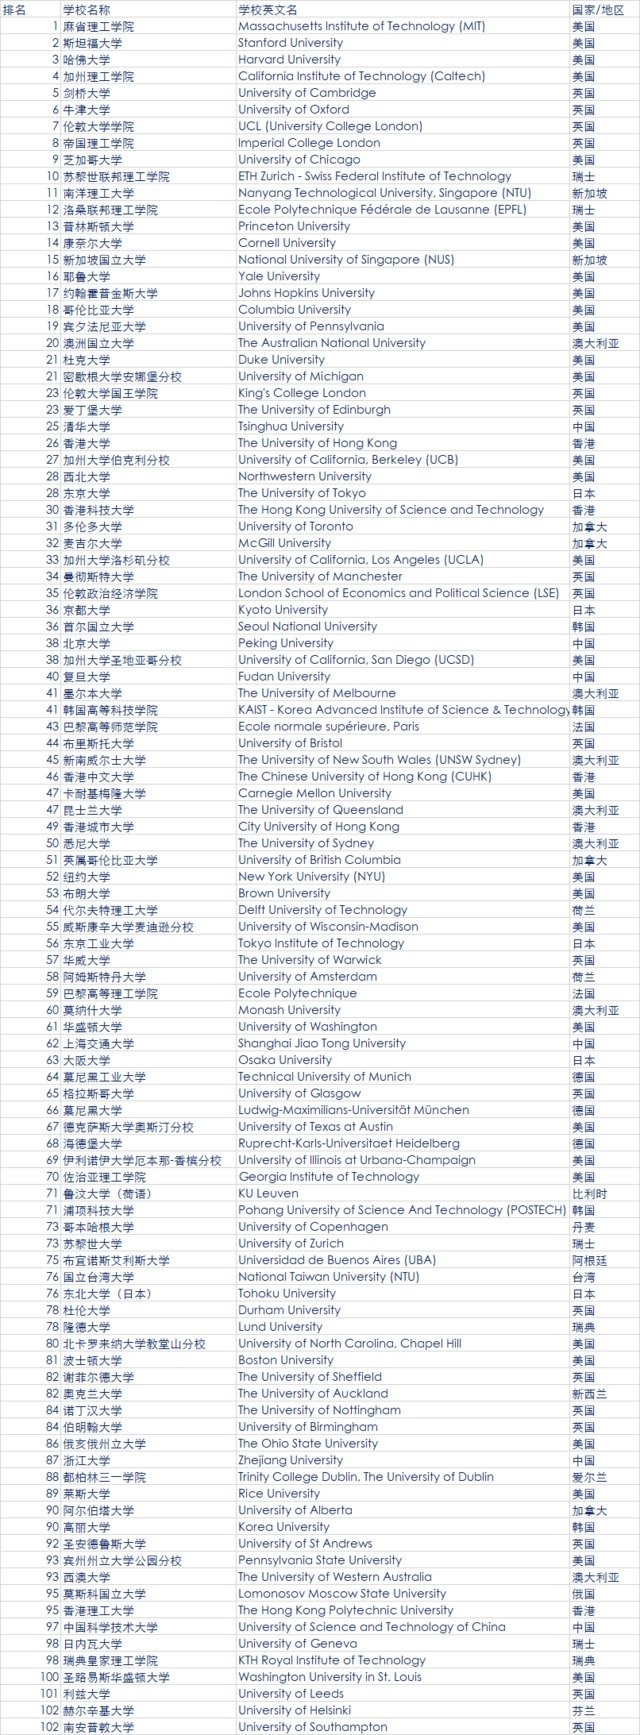 2018年QS世界大学排名发布 中国大陆6所高校进百强2